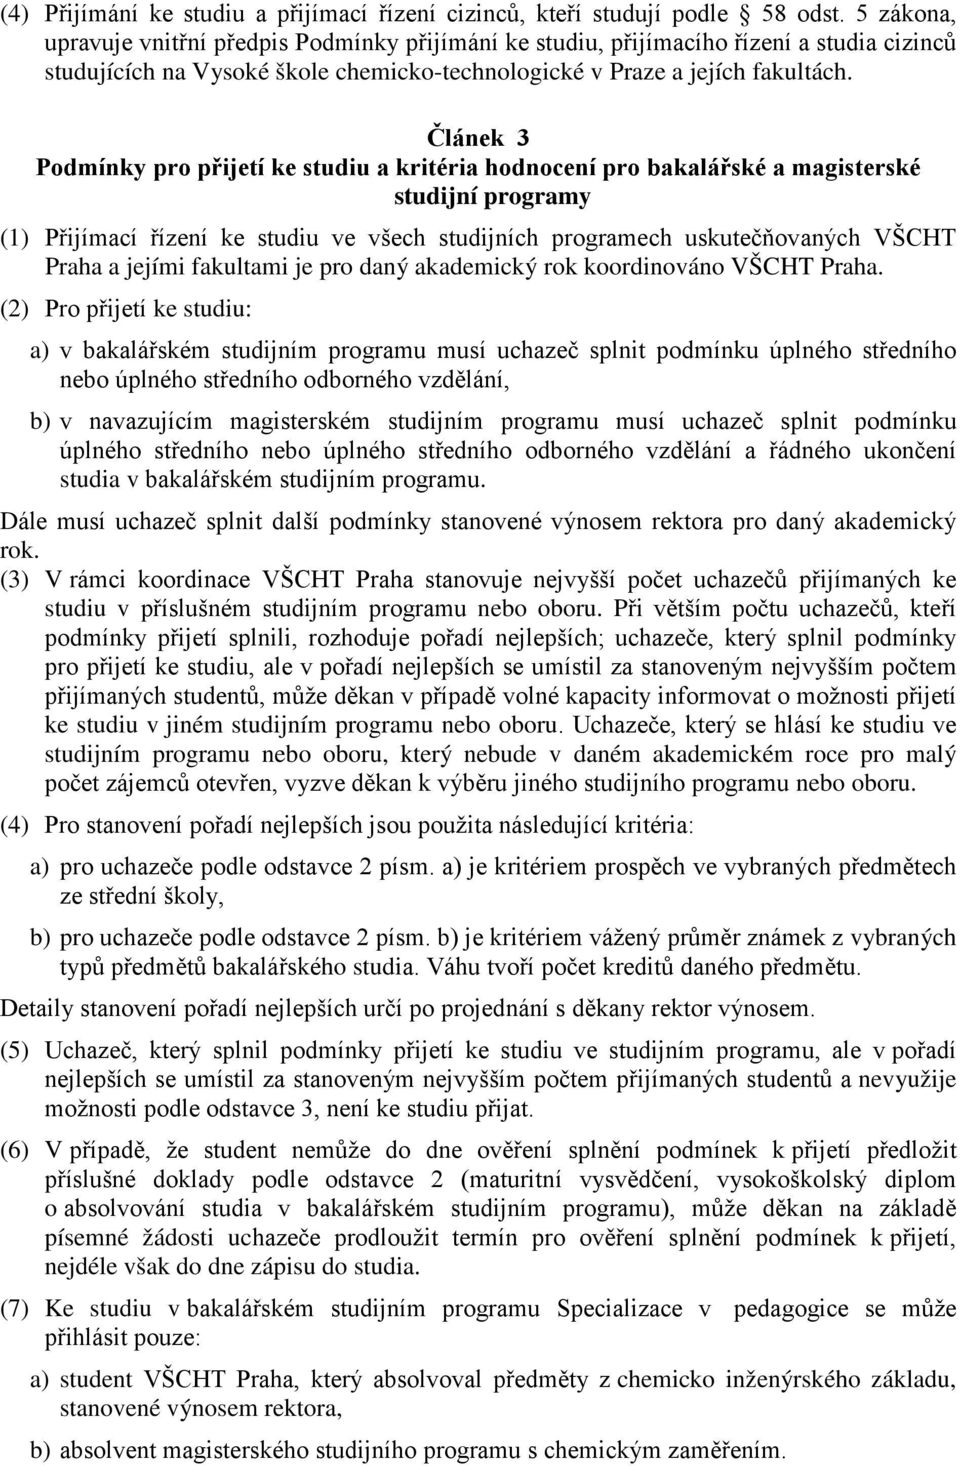 Článek 3 Podmínky pro přijetí ke studiu a kritéria hodnocení pro bakalářské a magisterské studijní programy (1) Přijímací řízení ke studiu ve všech studijních programech uskutečňovaných VŠCHT Praha a